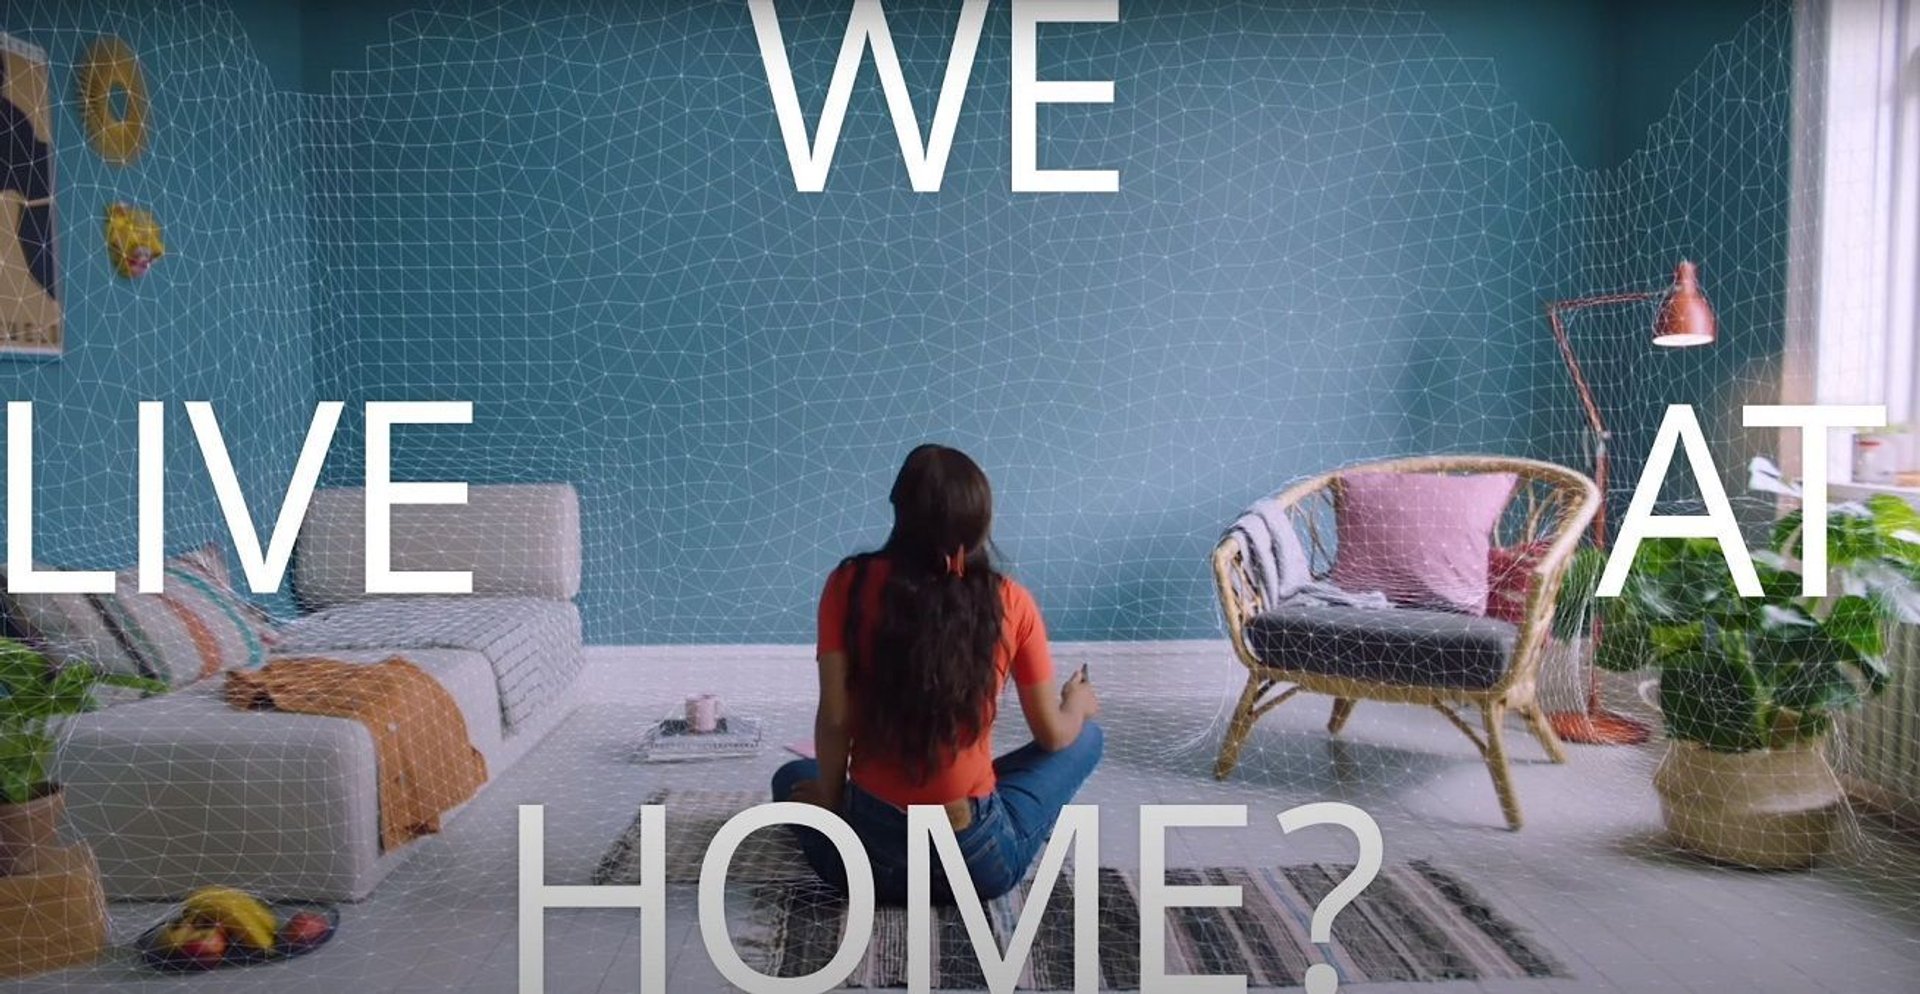 Fragment filmu wyprodukowanego przez Ikeę. Napis "WE LIVE AT HOME?" siatka na ścianach, kobieta na środku pokoju.